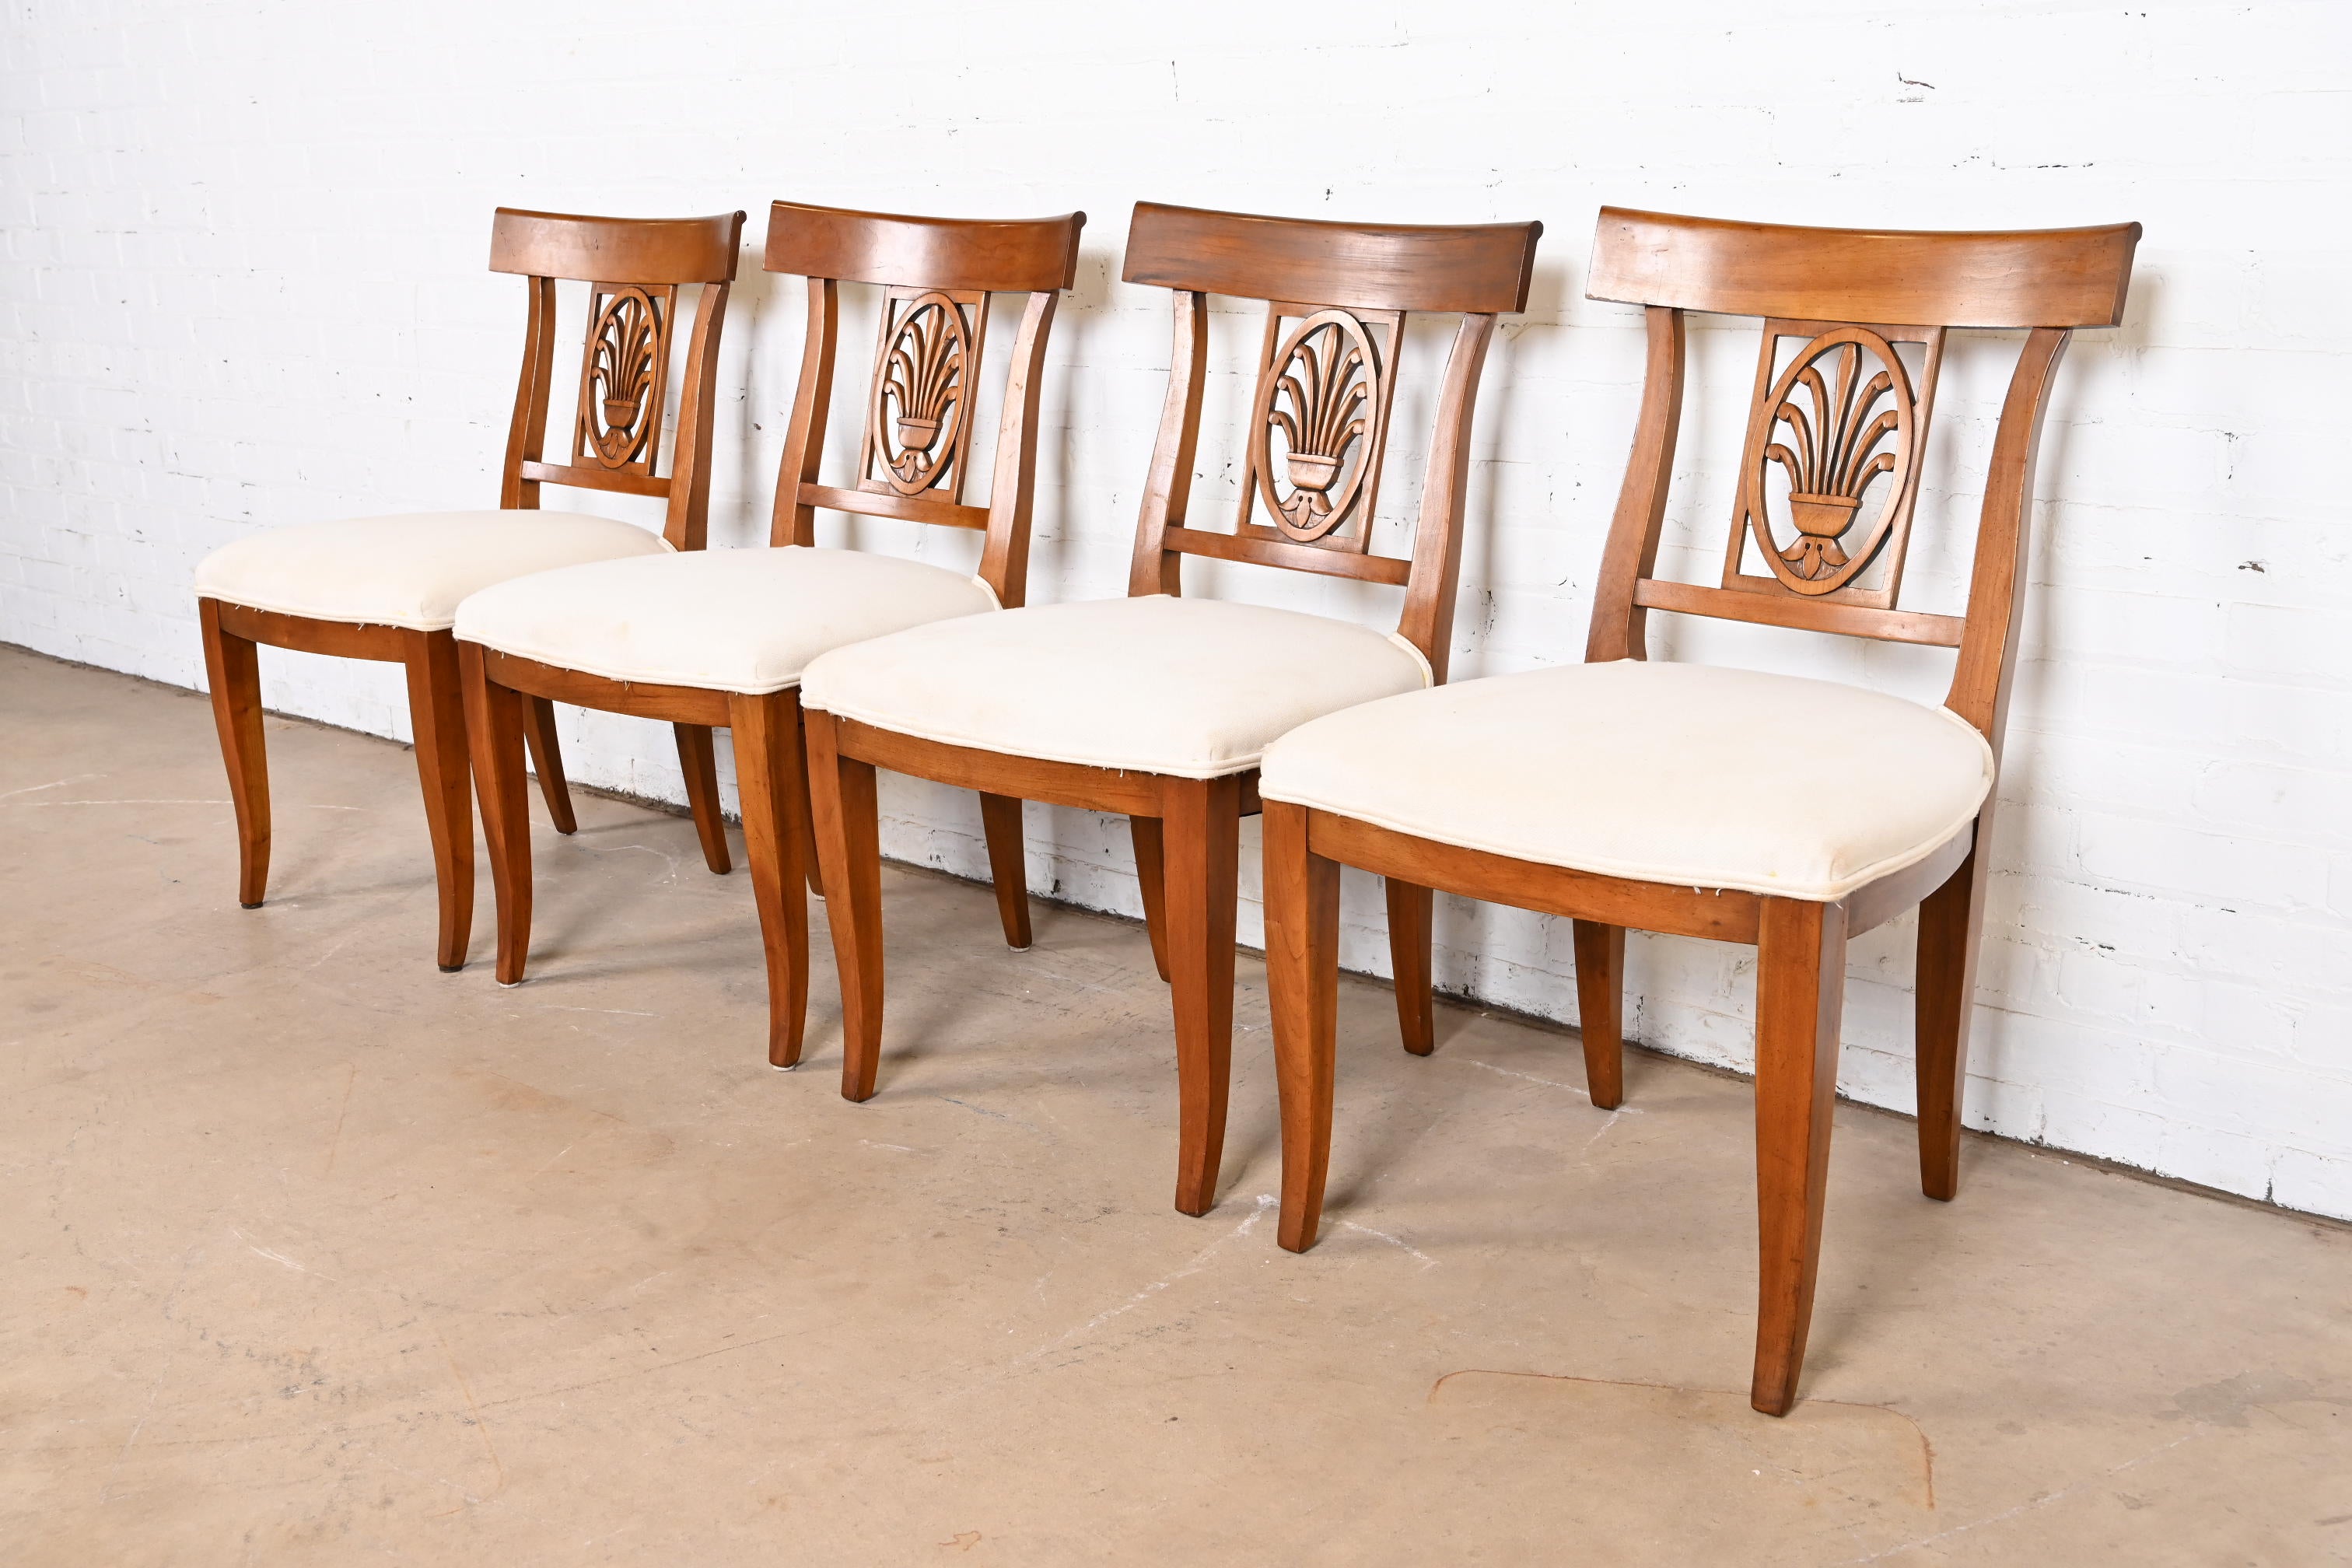 Ein prächtiger Satz von vier Esszimmerstühlen im Regency- oder neoklassizistischen Stil

Von Kindel Möbel

USA, ca. 1980er Jahre

Rahmen aus geschnitztem Obstholz, mit weiß gepolsterten Sitzen.

Maße: 20,5 